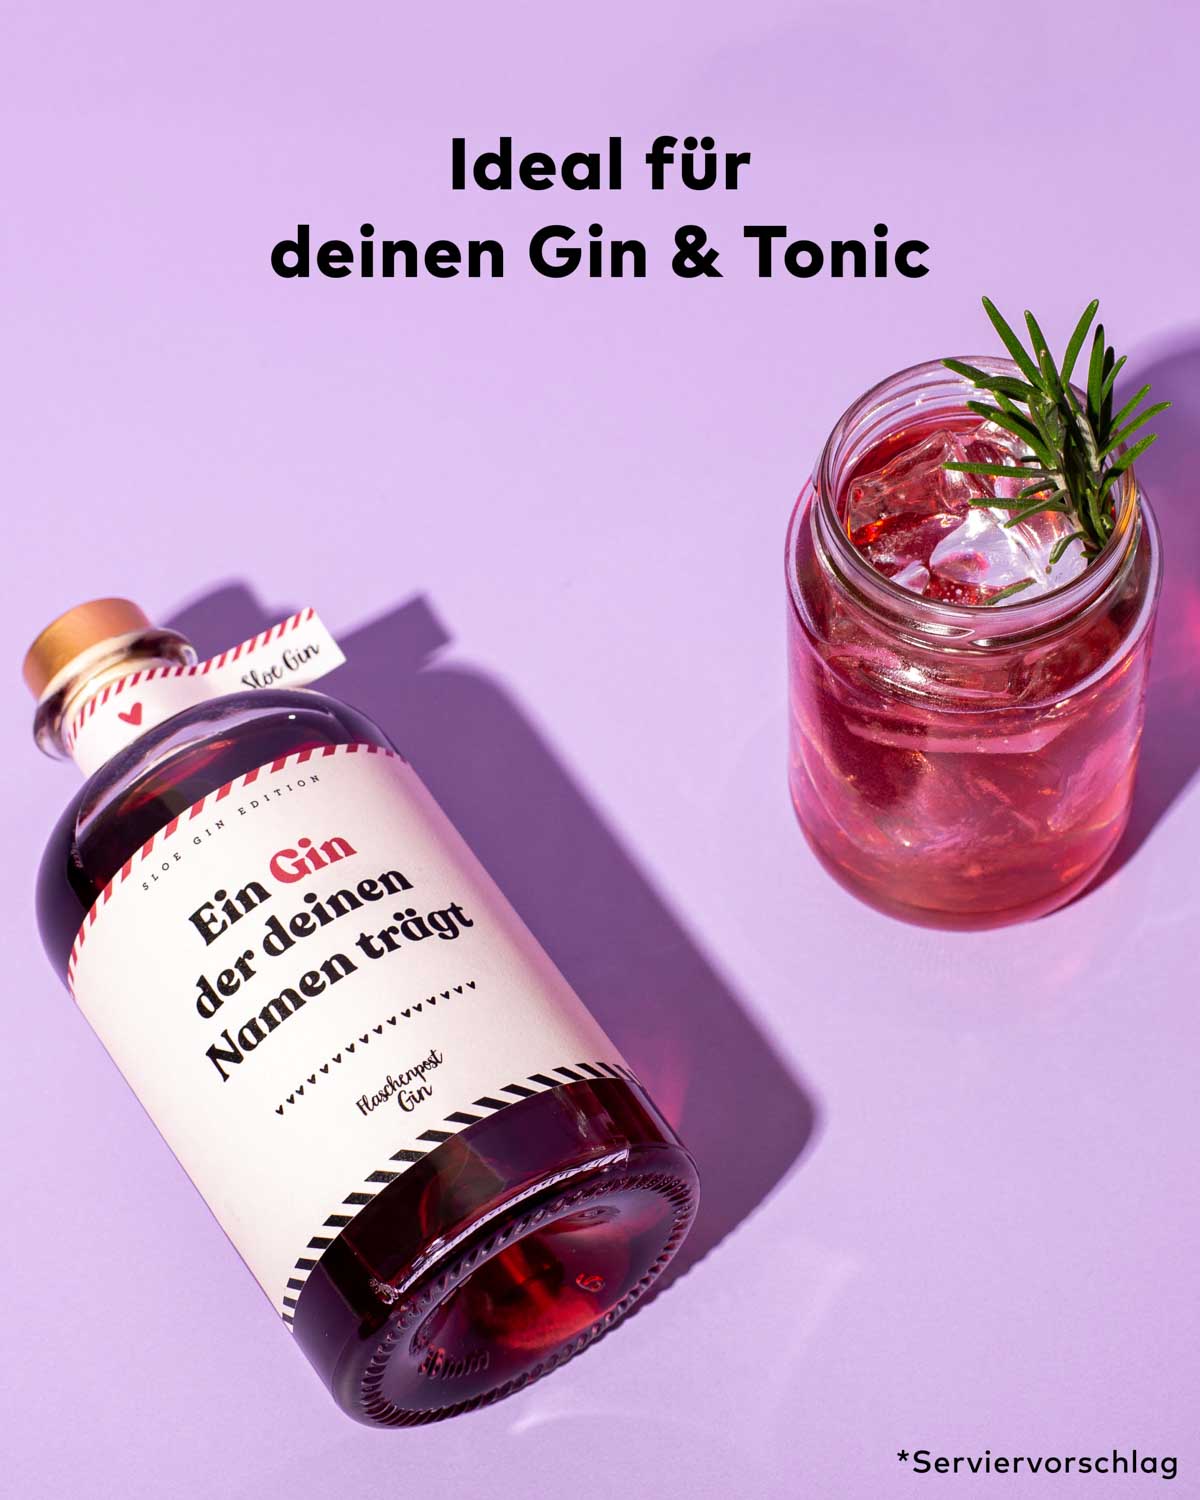 Der Sloe Gin mit Etikett zum Beschriften mit deinem Namen oder den deiner Liebsten, ist perfekt für deinen nächsten Gin & Tonic. 